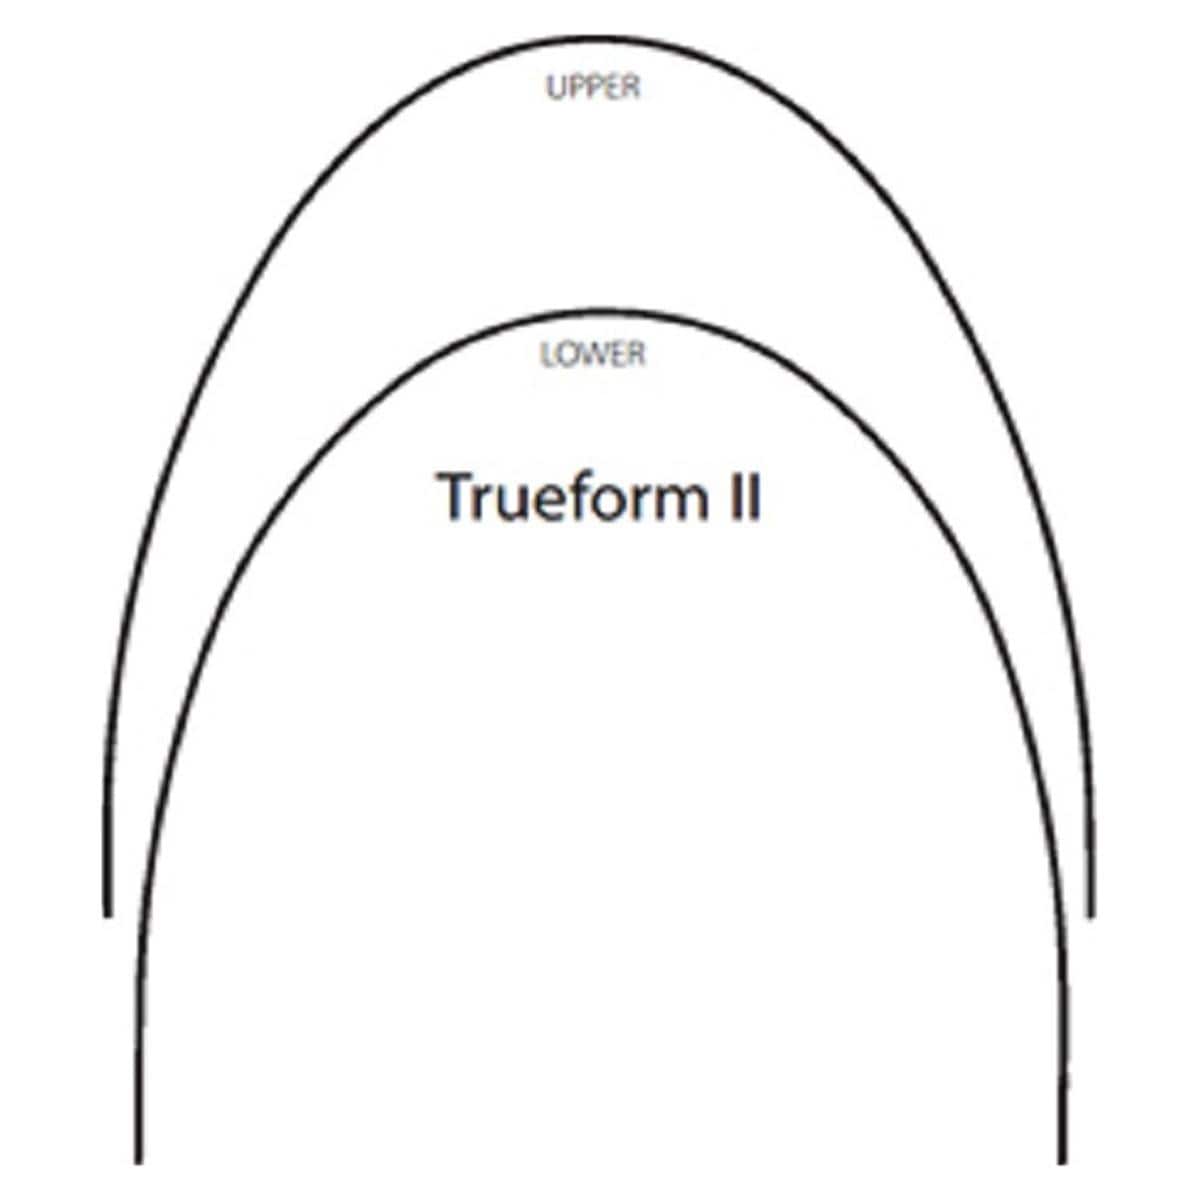 Draad NiTi Trueform II, rond - Onder, .014 - 25 stuks